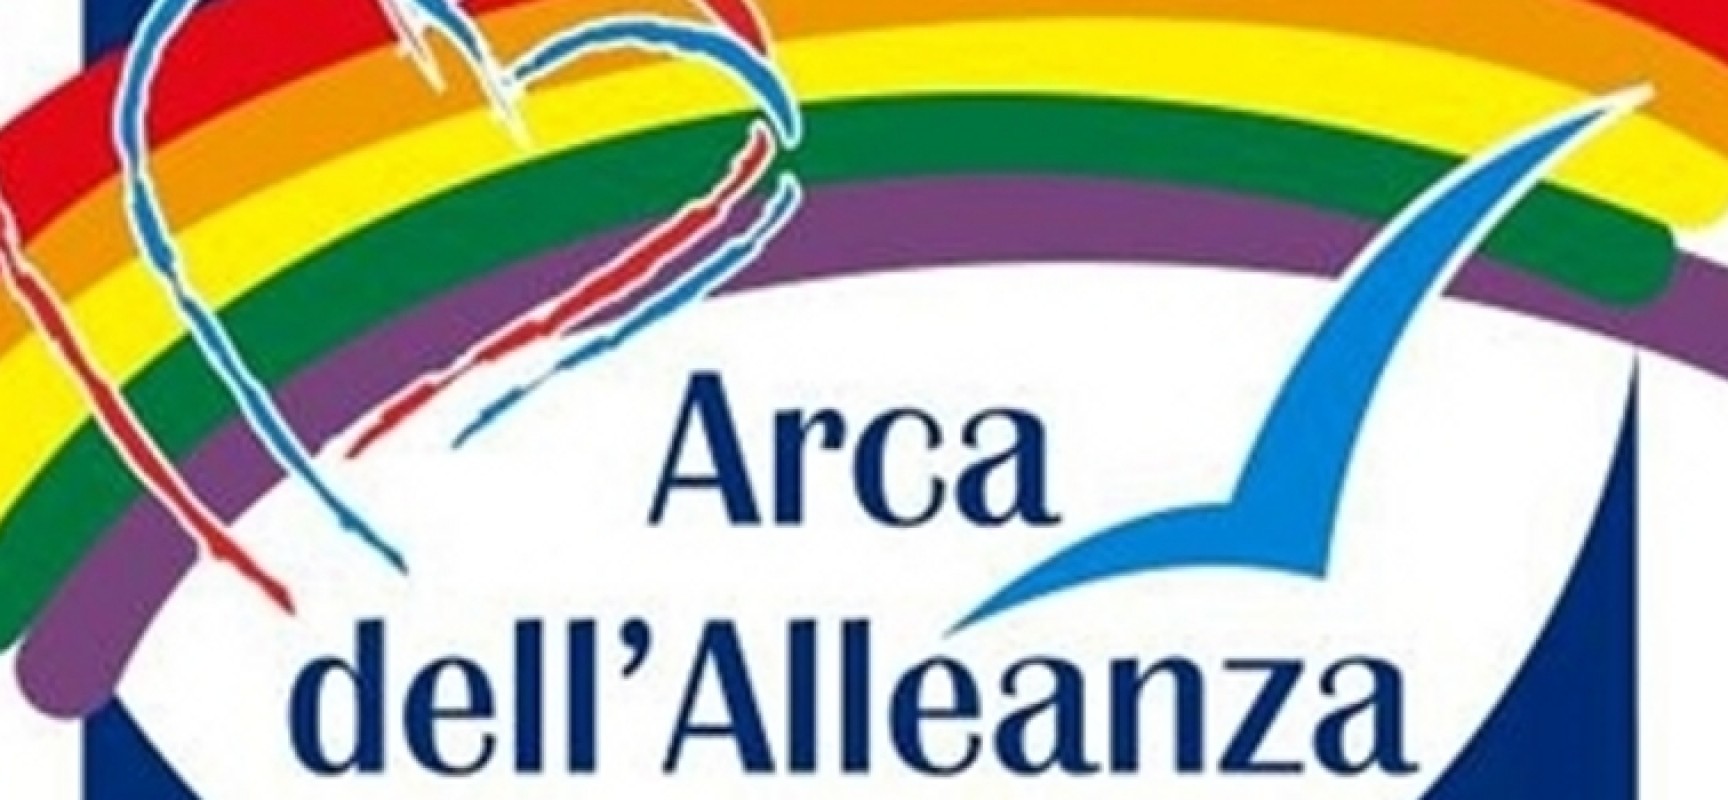 “Affettività e sessualità”, parte domani il corso organizzato da Arca dell’Alleanza